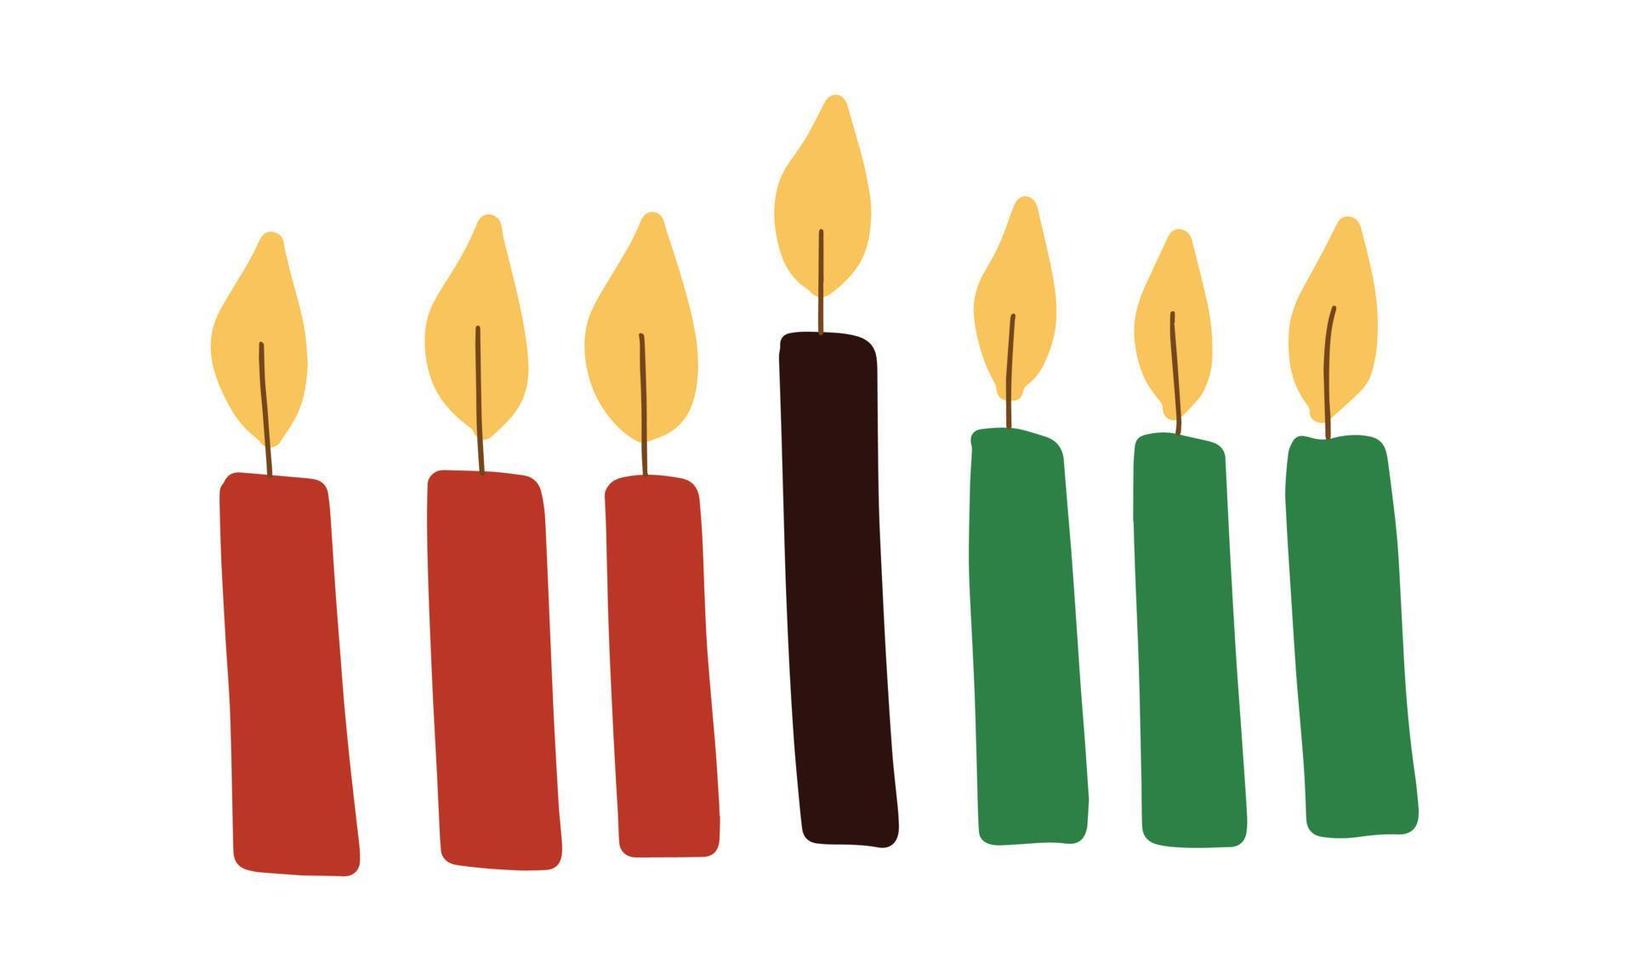 siete velas kwanzaa kinara en colores africanos tradicionales: rojo, negro, verde. ilustración vectorial simple, dibujo de velas prediseñadas para el festival de kwanzaa vector